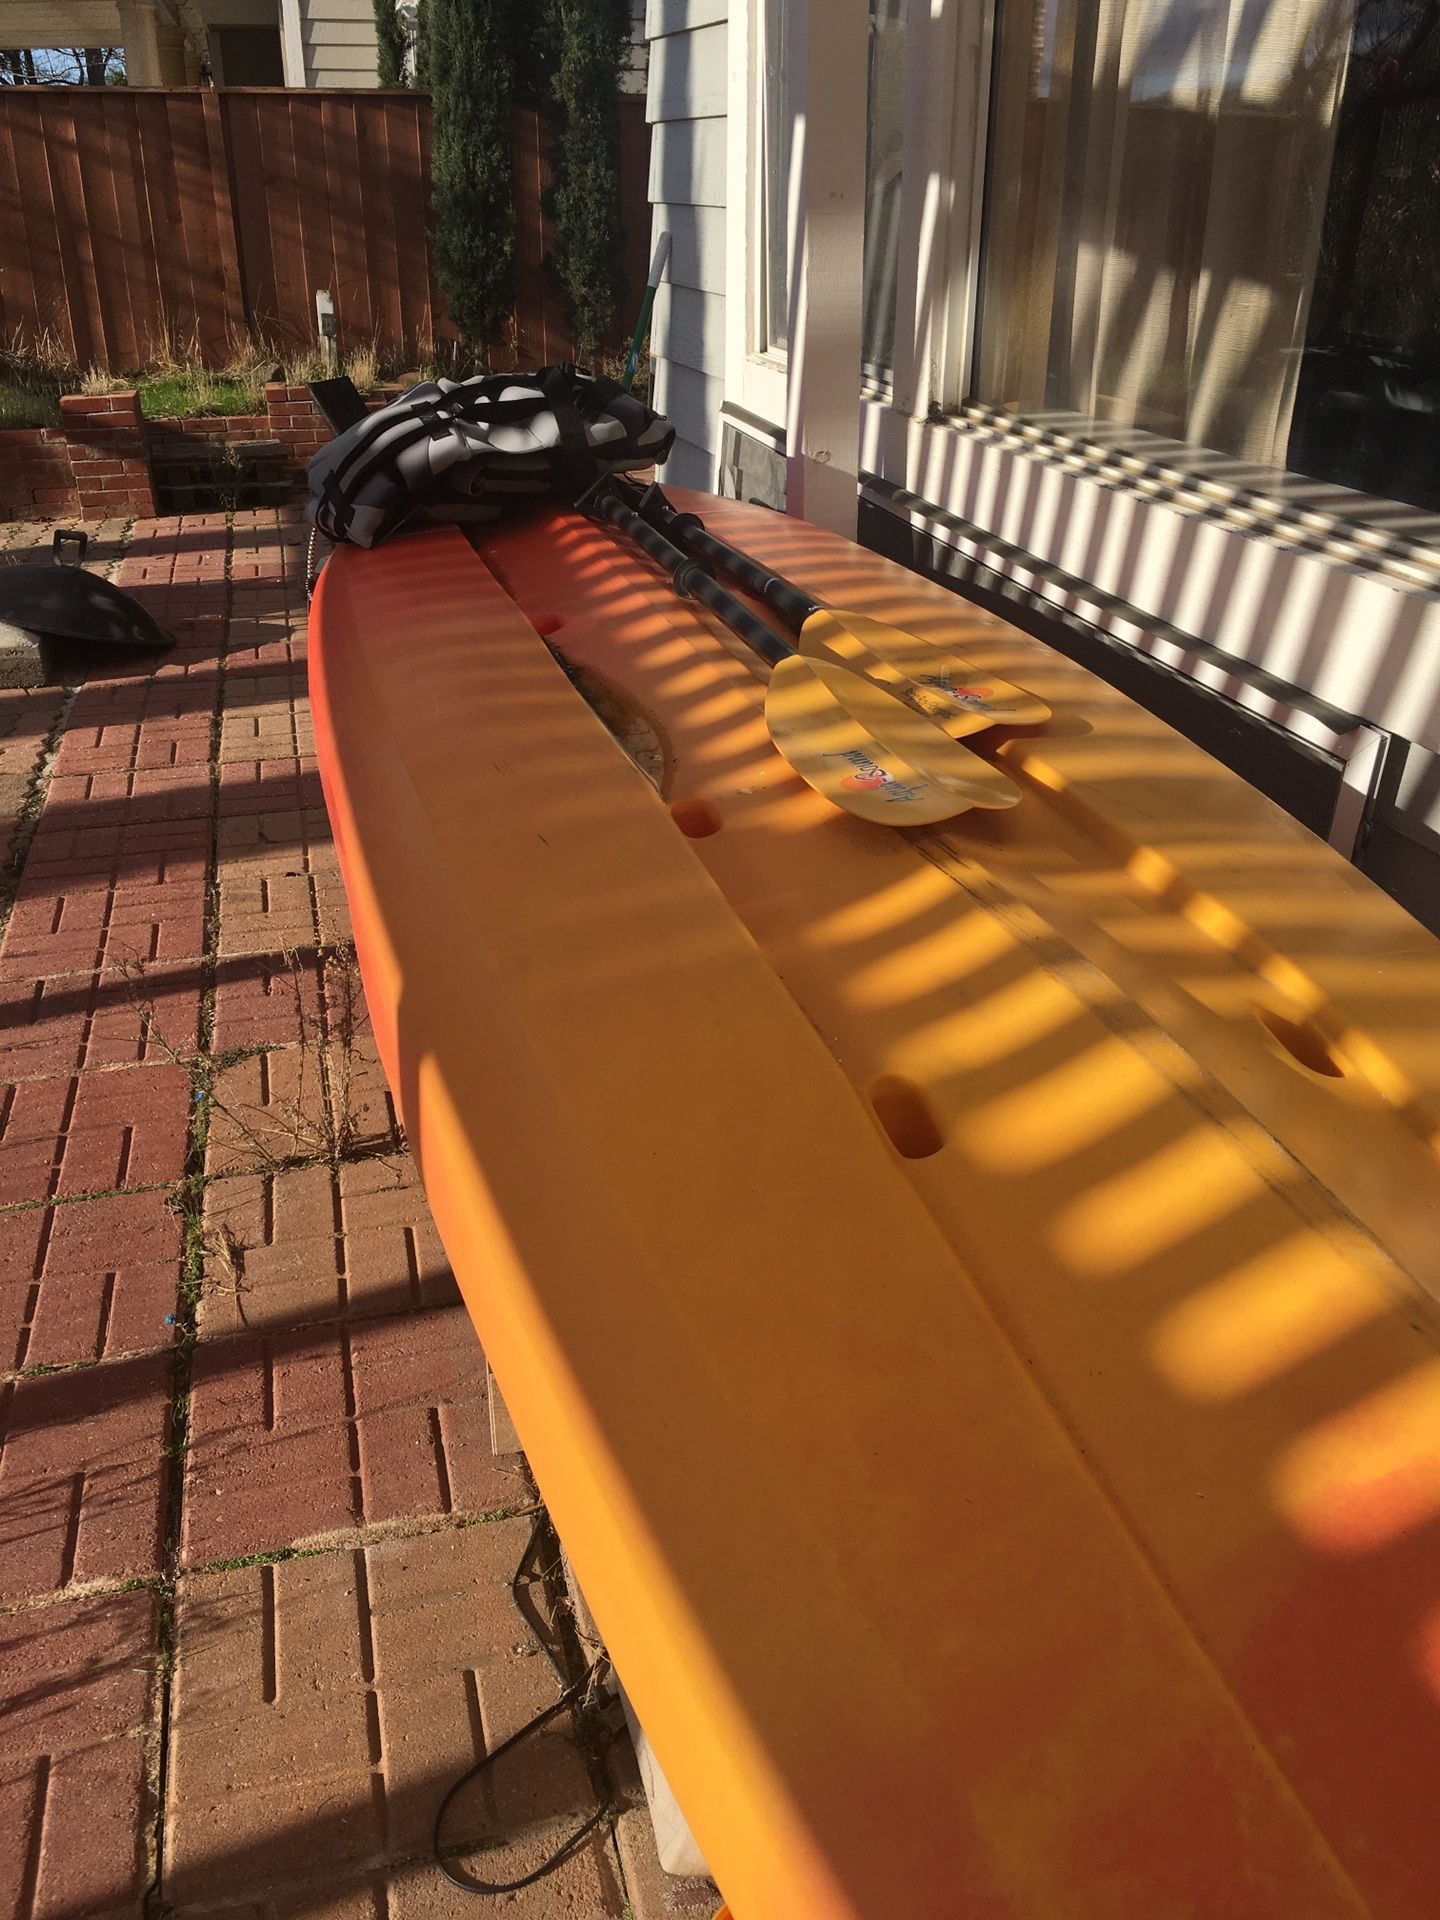 13.5 ft kayak